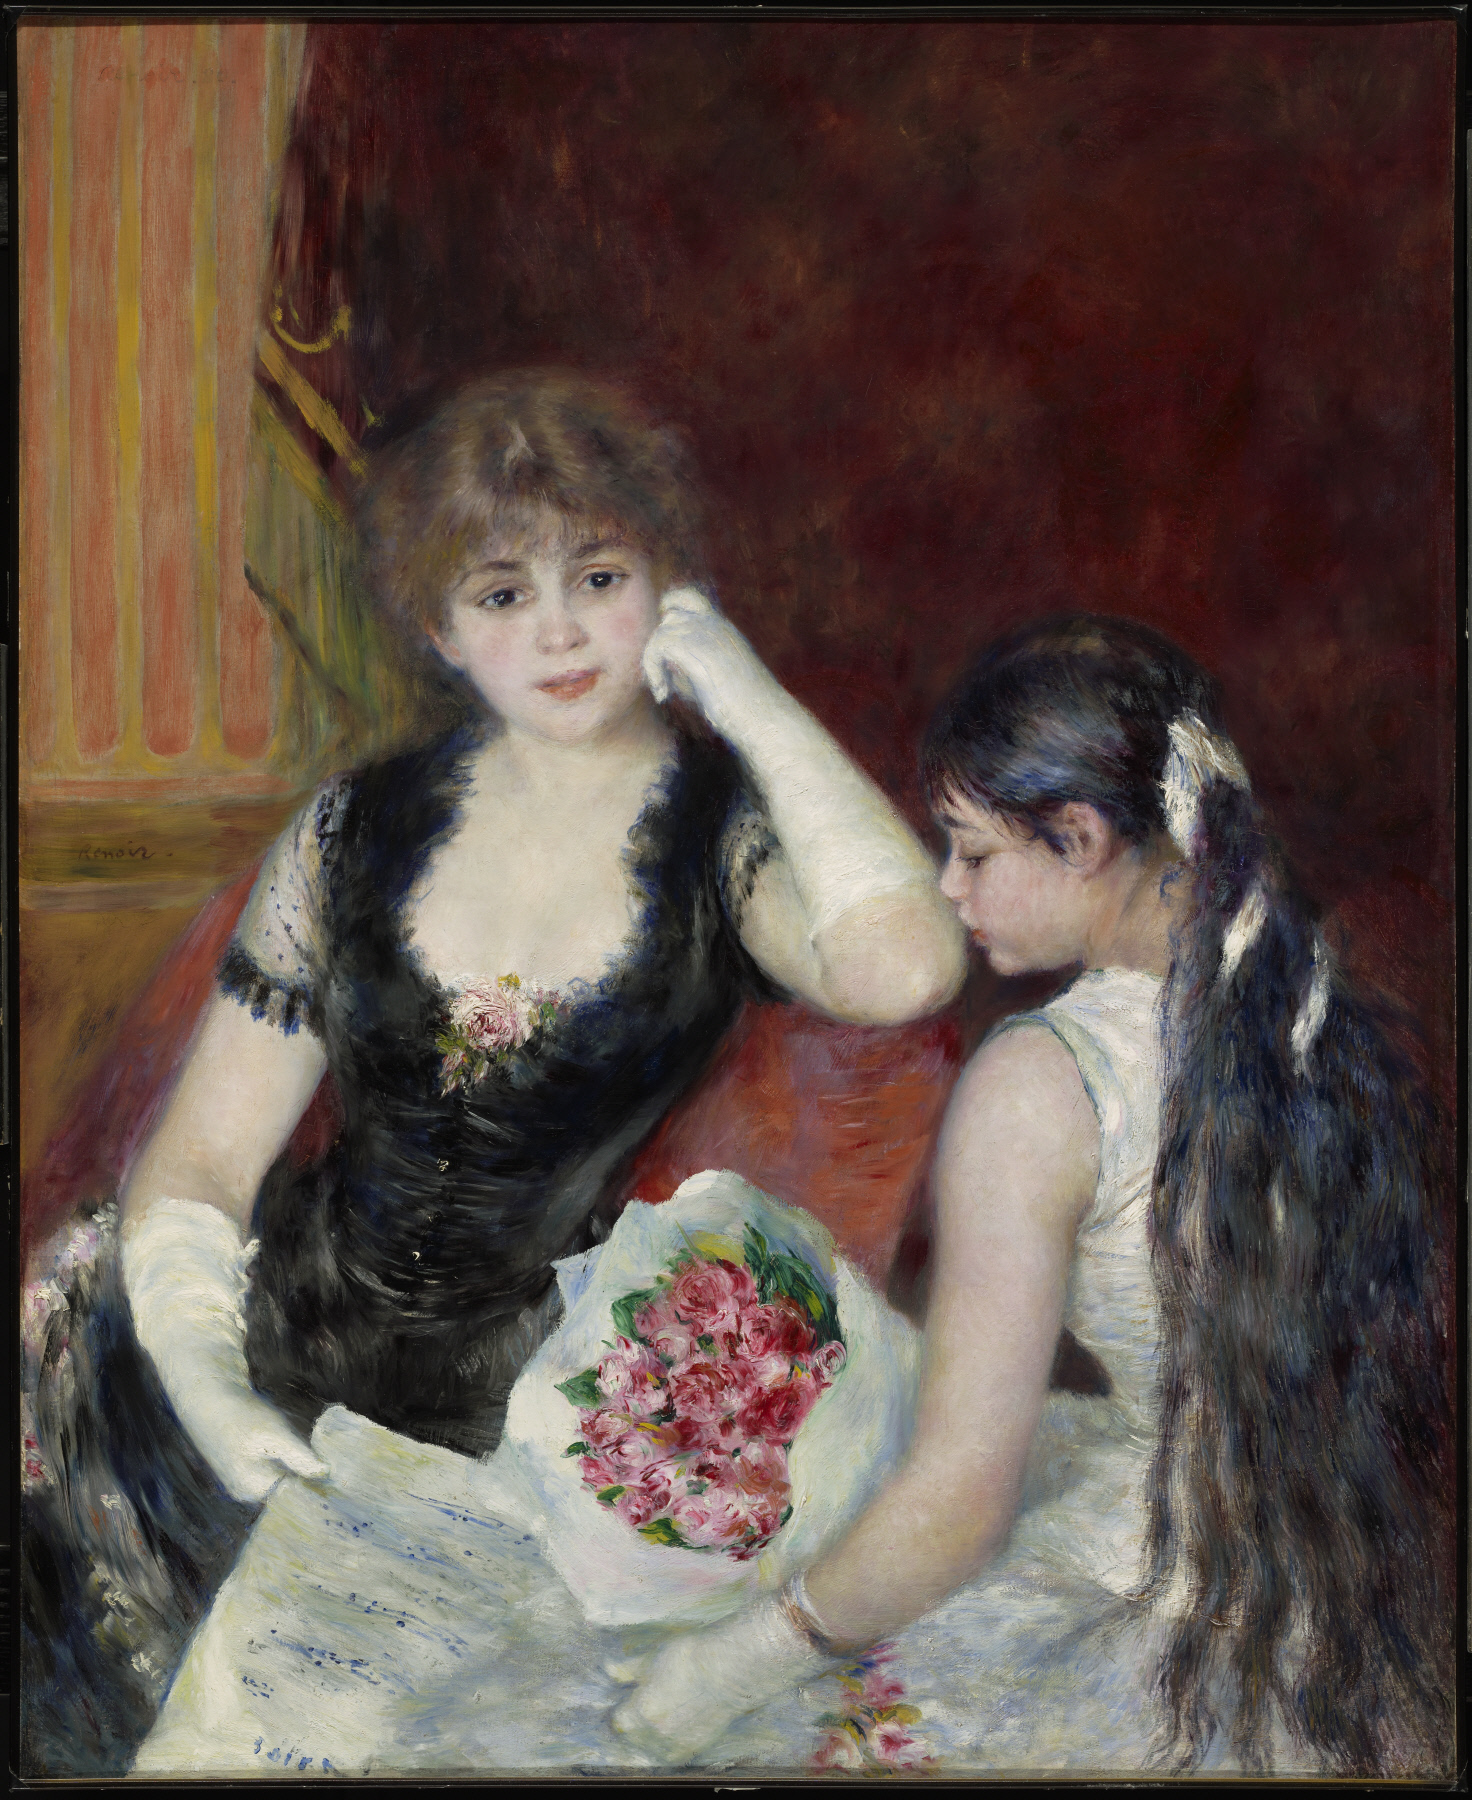 劇場のボックス席にて by Pierre-Auguste Renoir - 1880 - 99.4 x 80.7 cm 